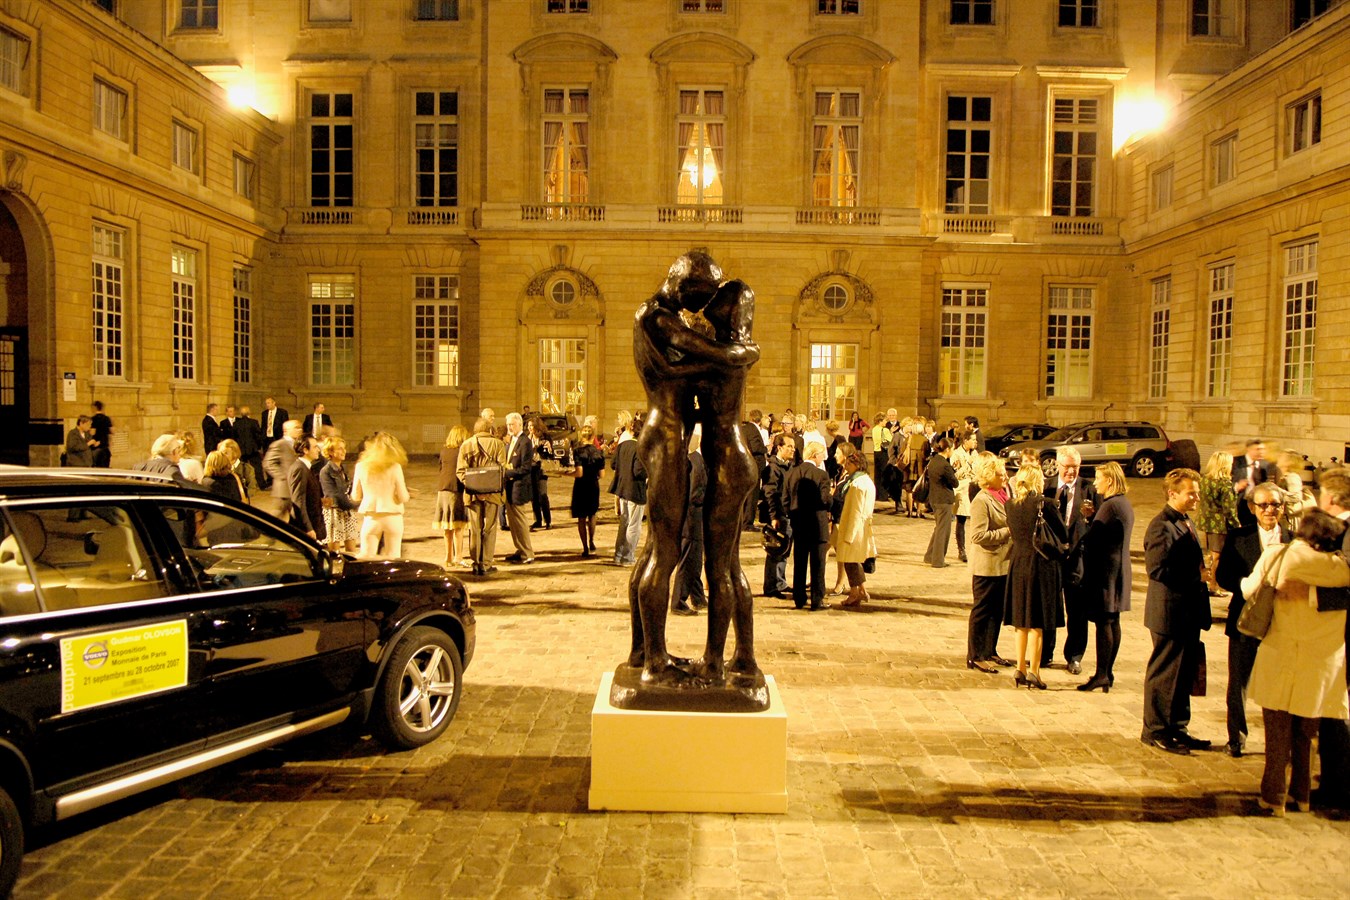 Volvo partenaire de l'exposition du célèbre sculpteur suédois Gudmar Olovson